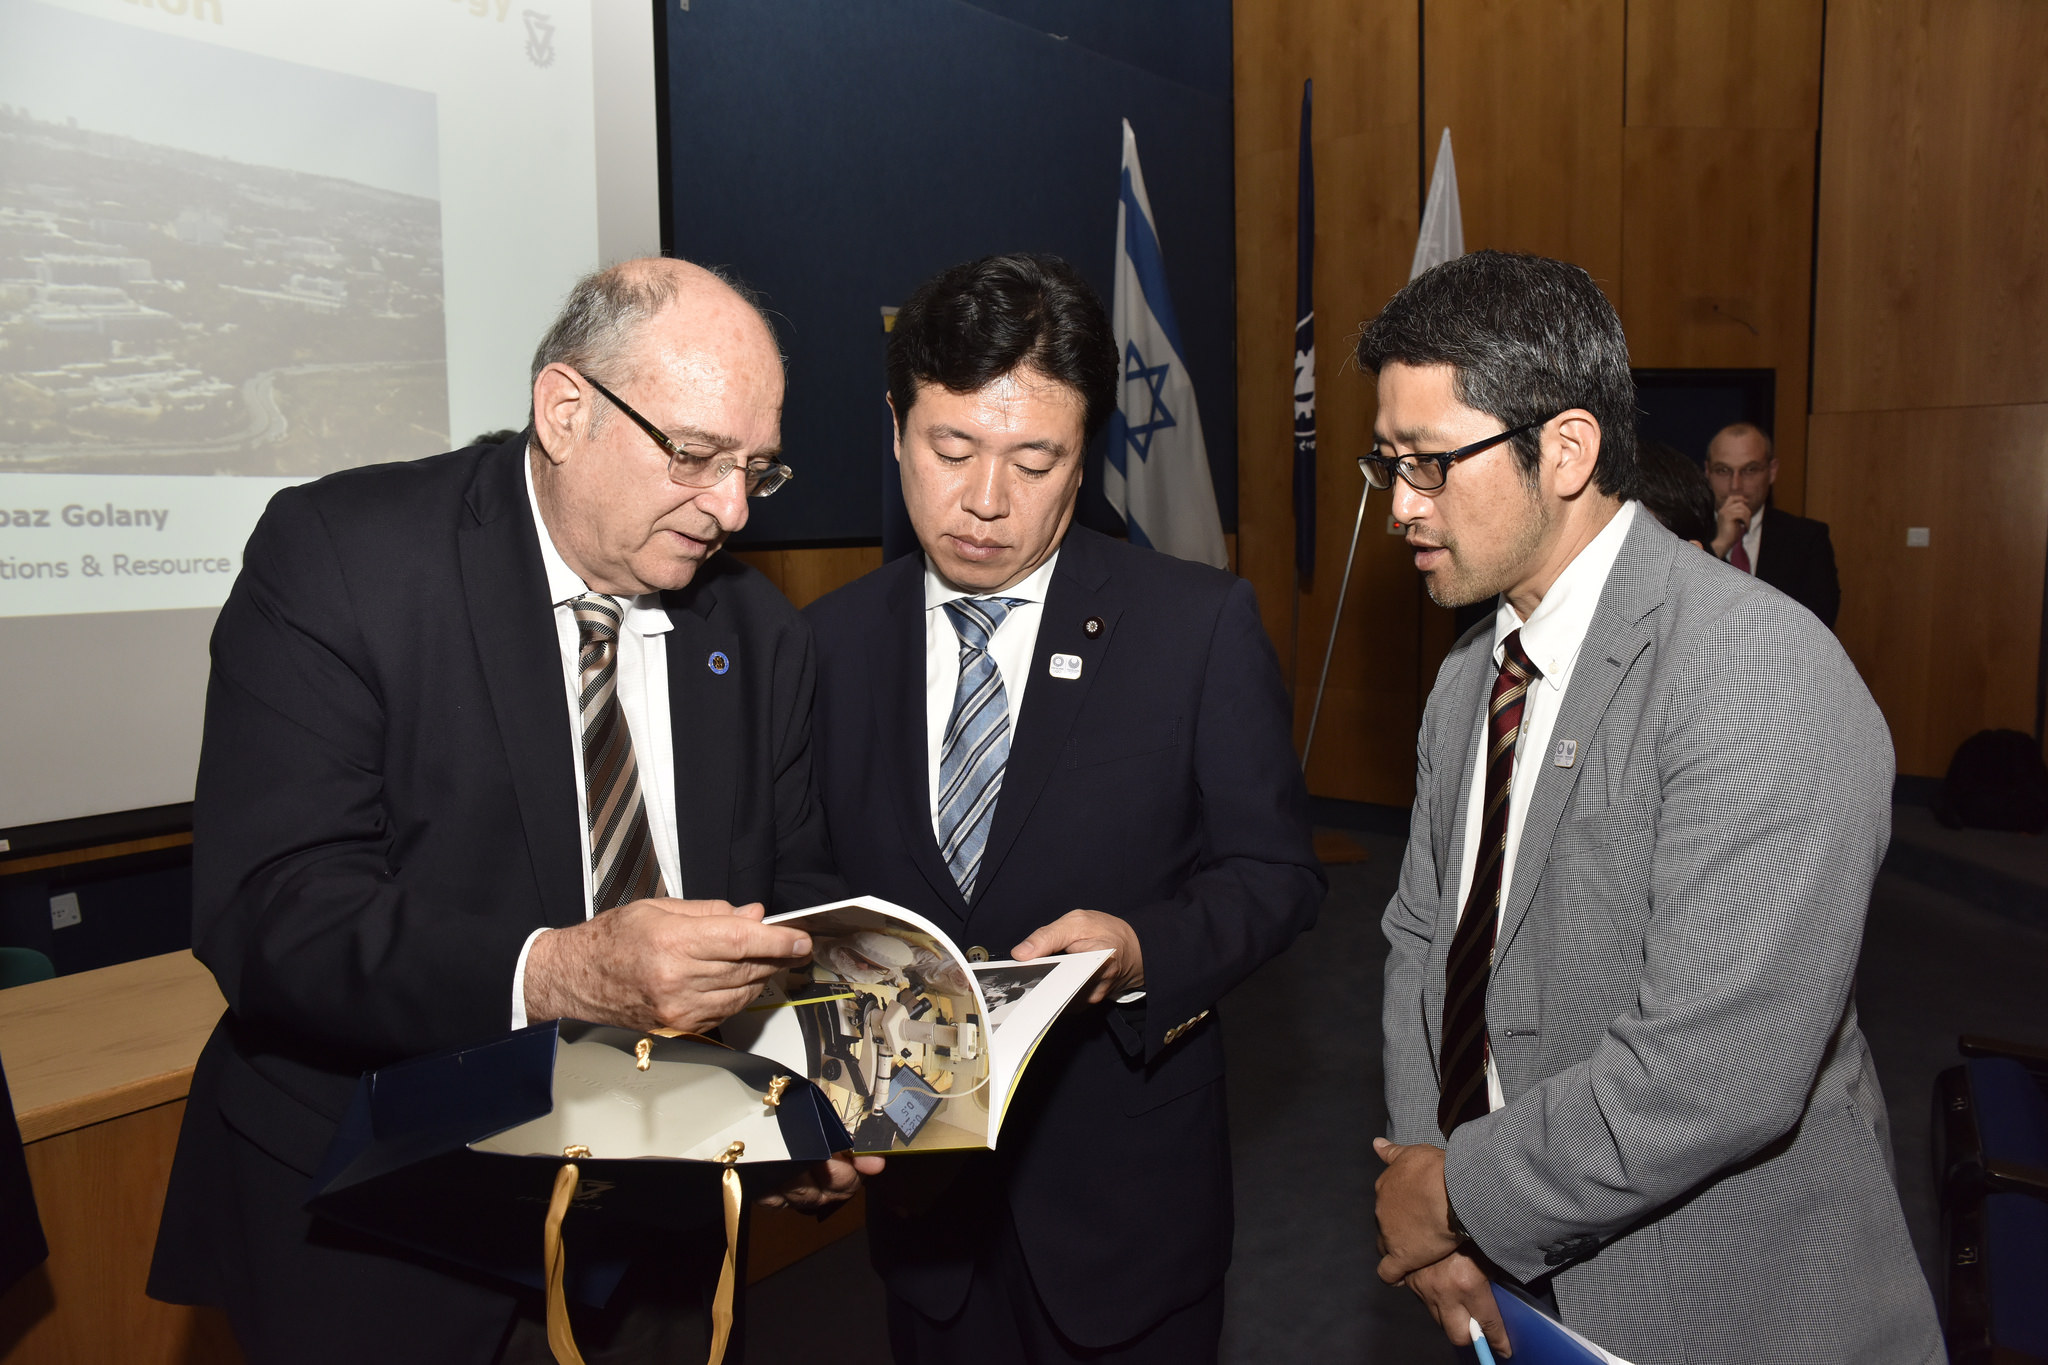 נשיא הטכניון פרופ' פרץ לביא ושר המדע, הטכנולוגיה והחלל היפני יוסקה טסורוהו (צילום: שרון צור)